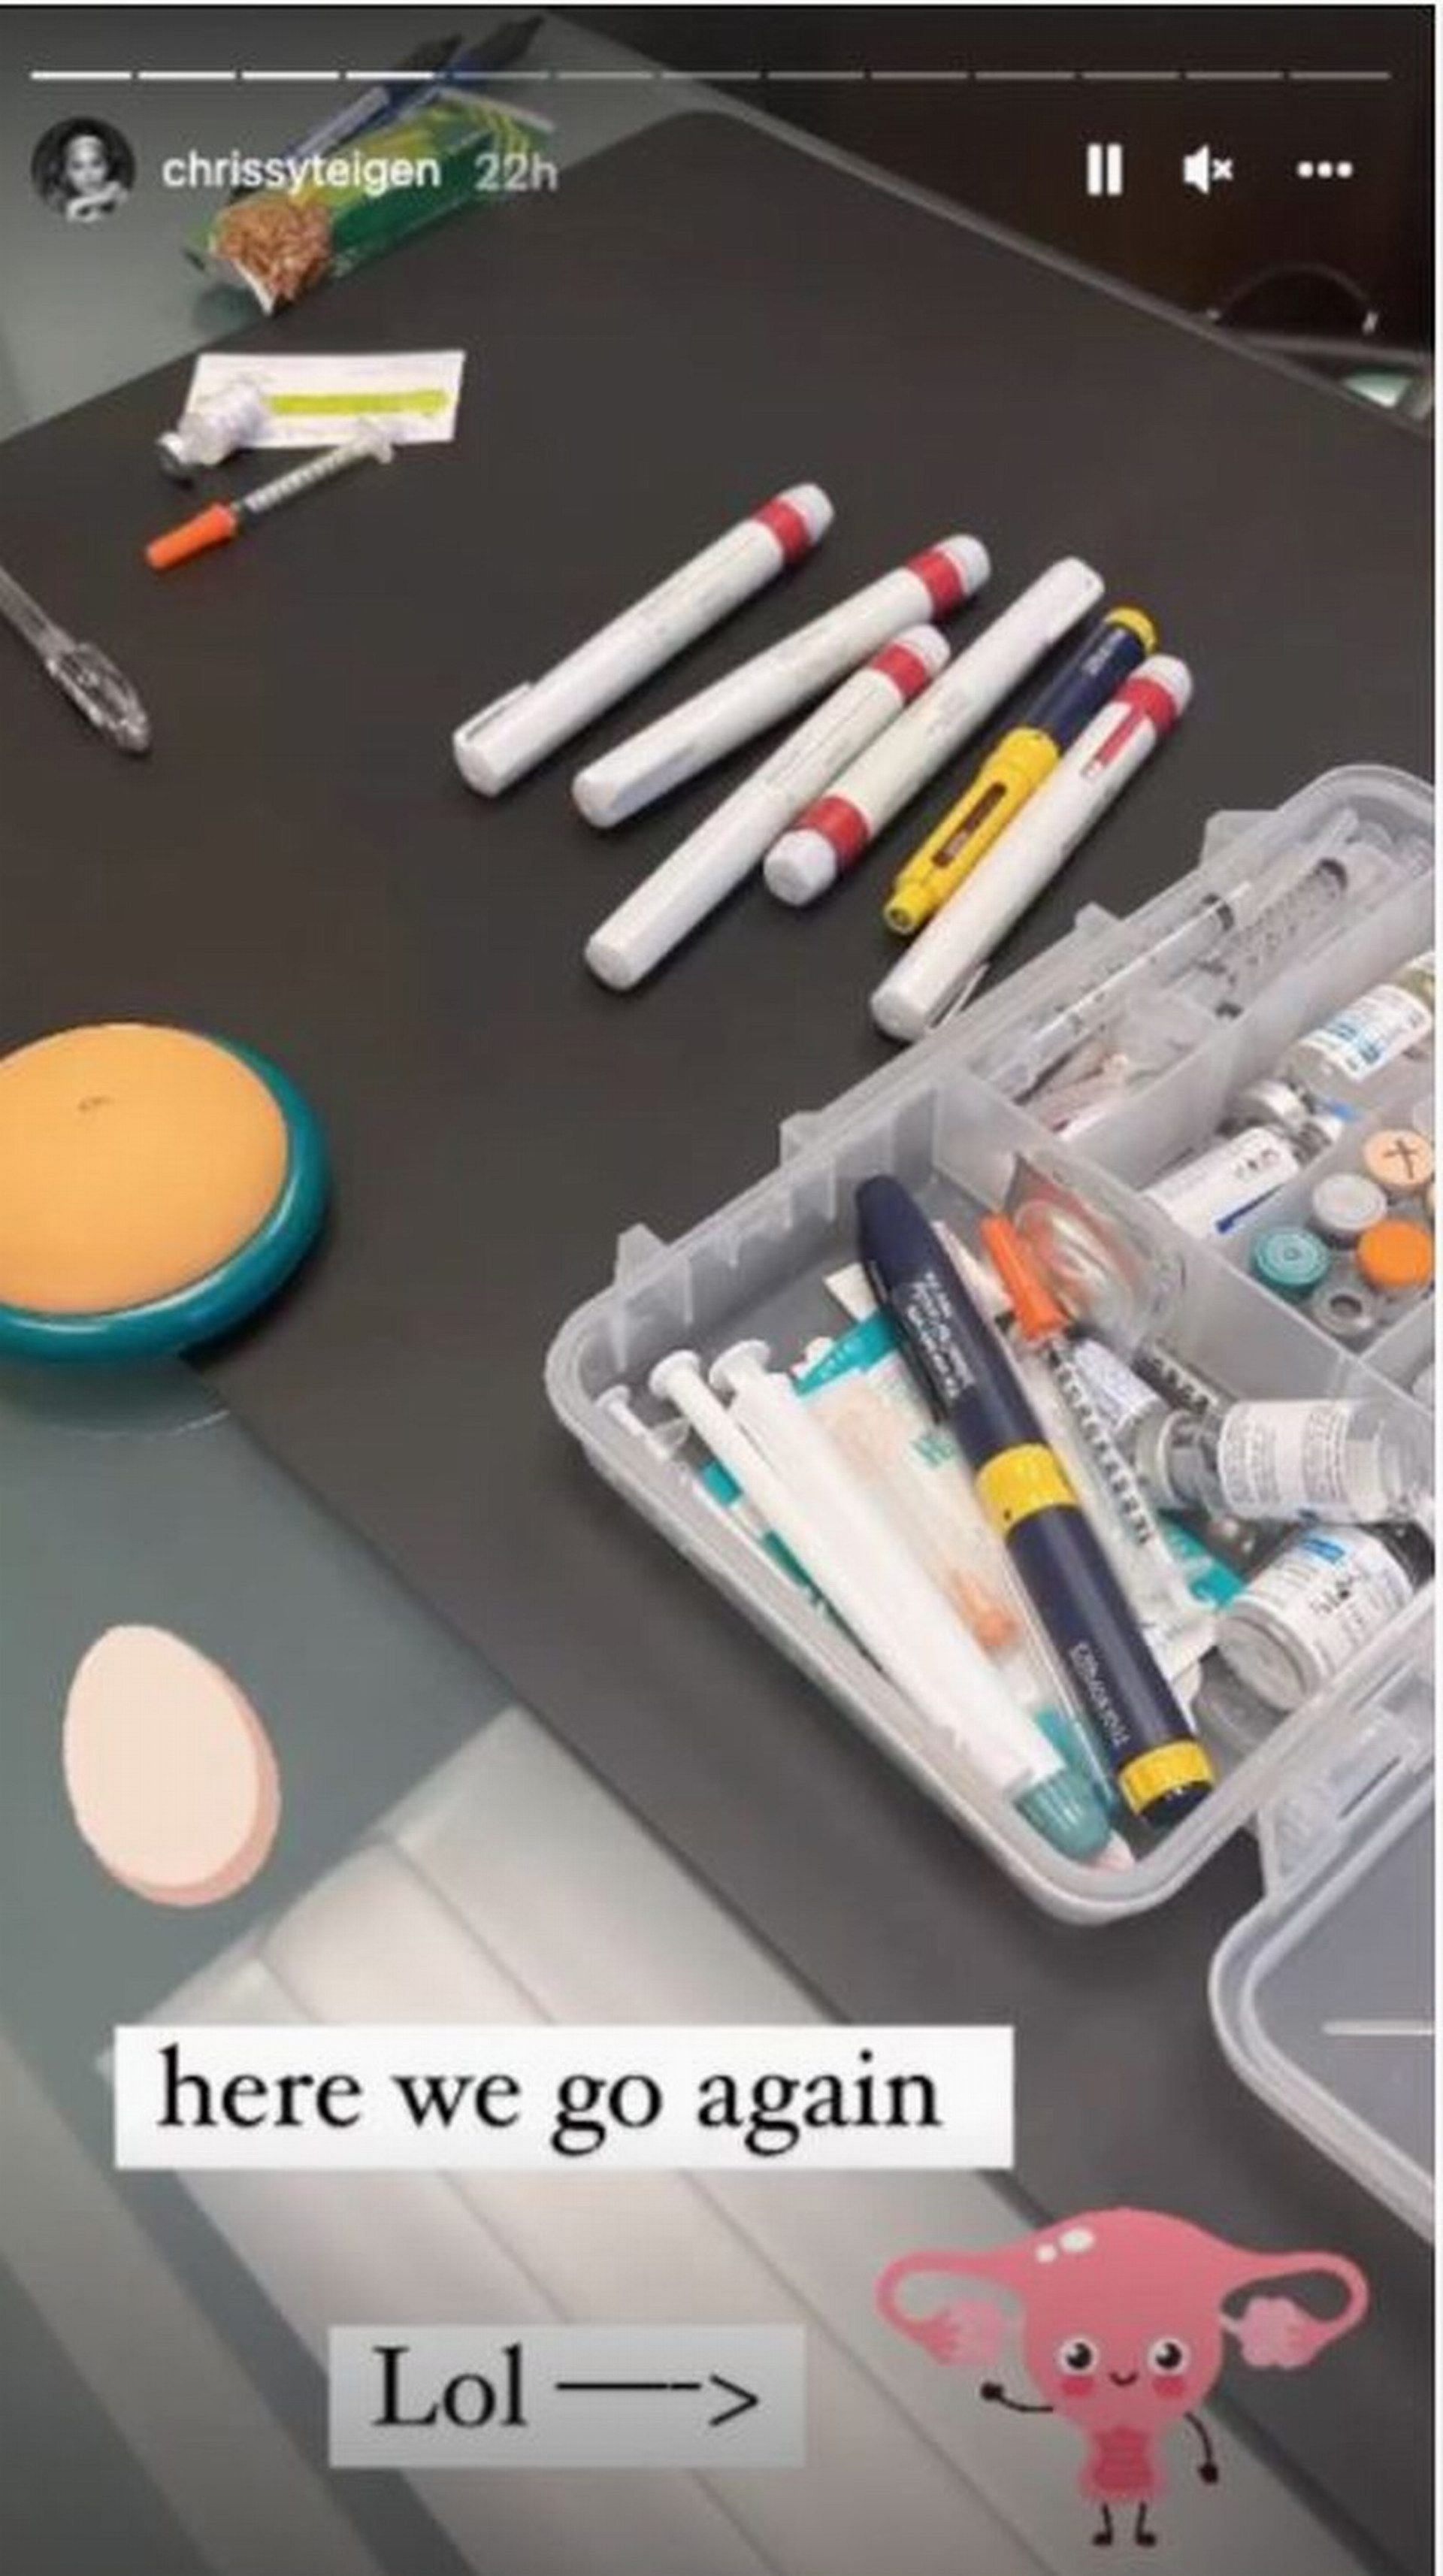 Teigen shared a photo of an IVF injectable medication on her Instagram story (Image via Instagram/@chrissyteigen)